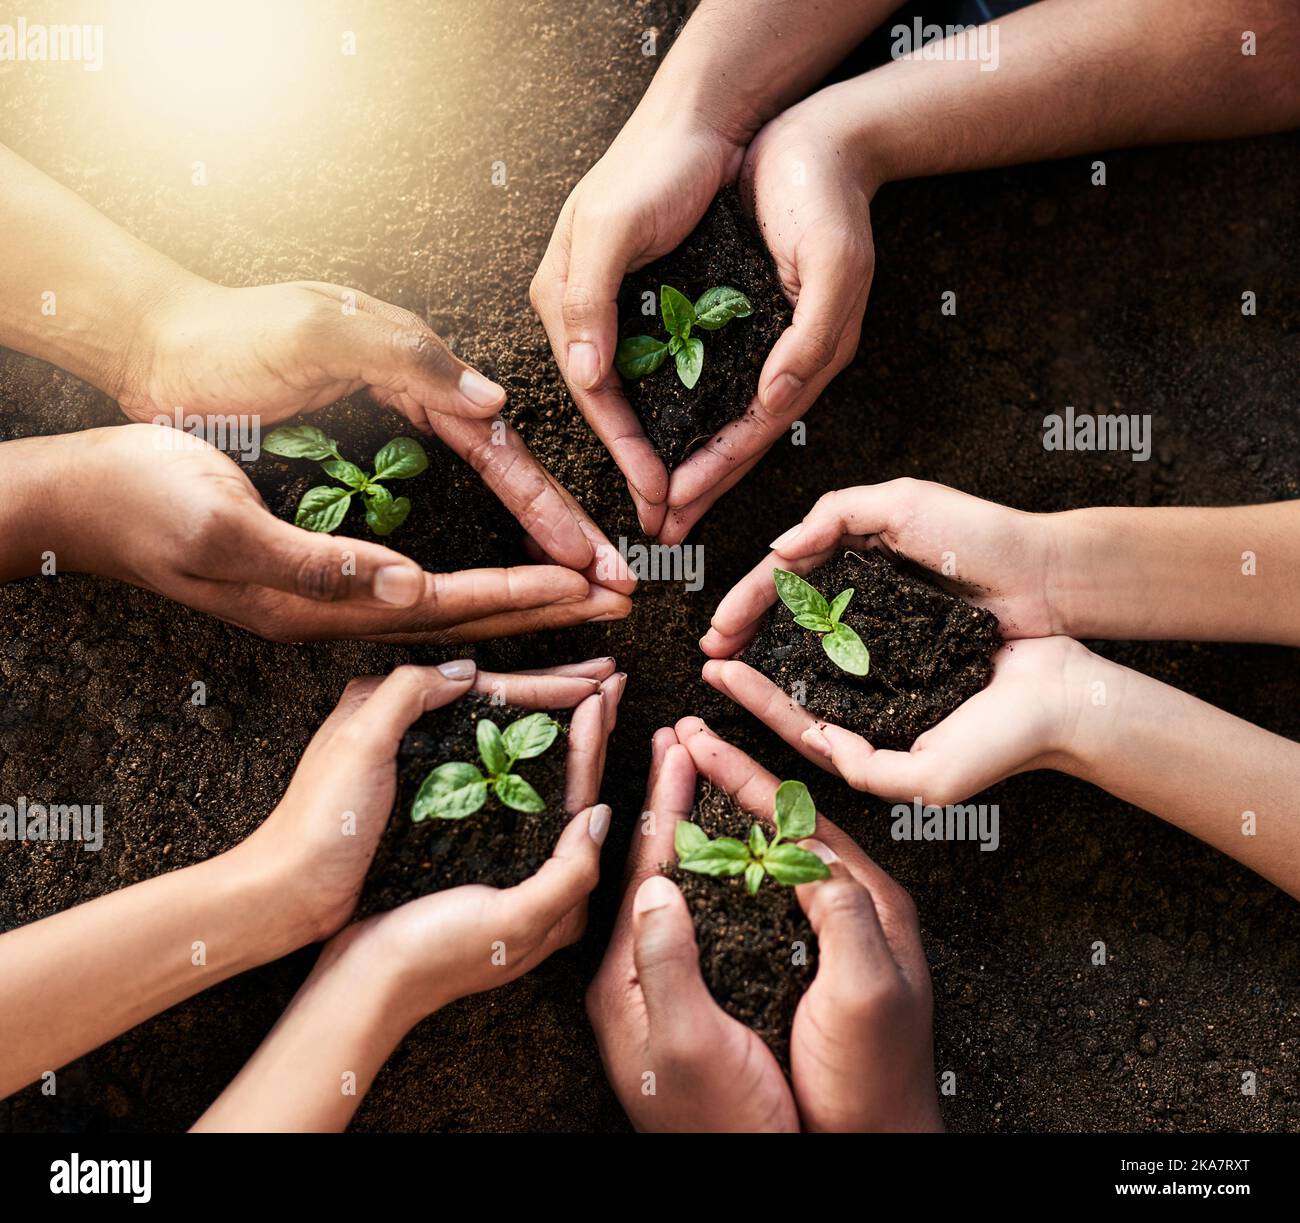 È un investimento per la nostra comunità e le generazioni future, un gruppo di persone irriconoscibili che detengono piante che crescono fuori dal suolo. Foto Stock